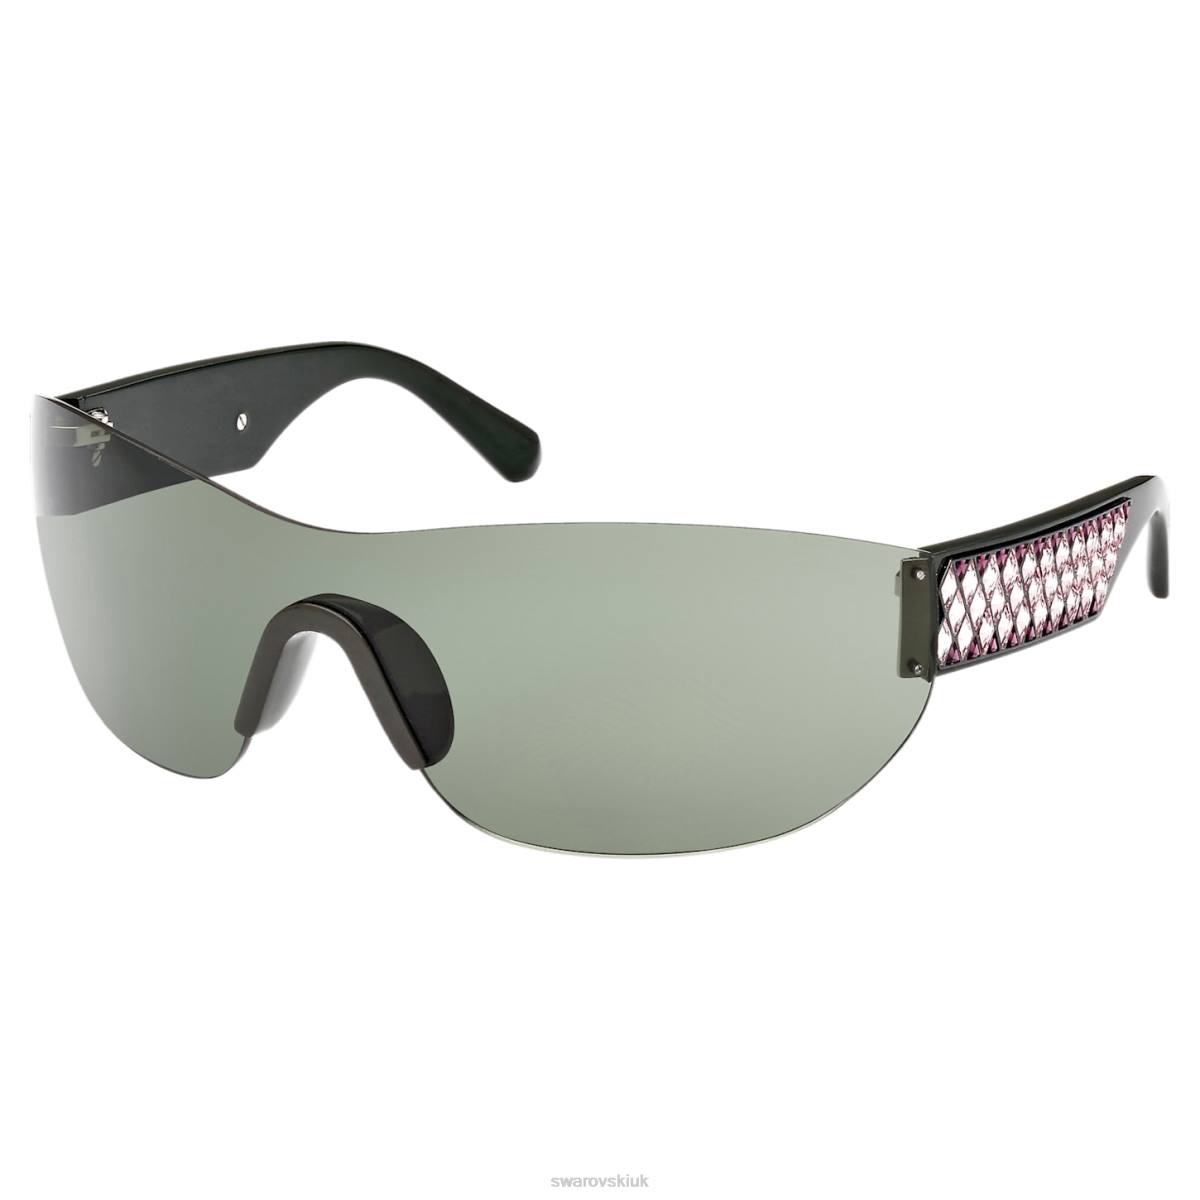 Accessories Swarovski Sunglasses Mask, Gradient tint, SK0364 98Q, Multicolored 48JX1449